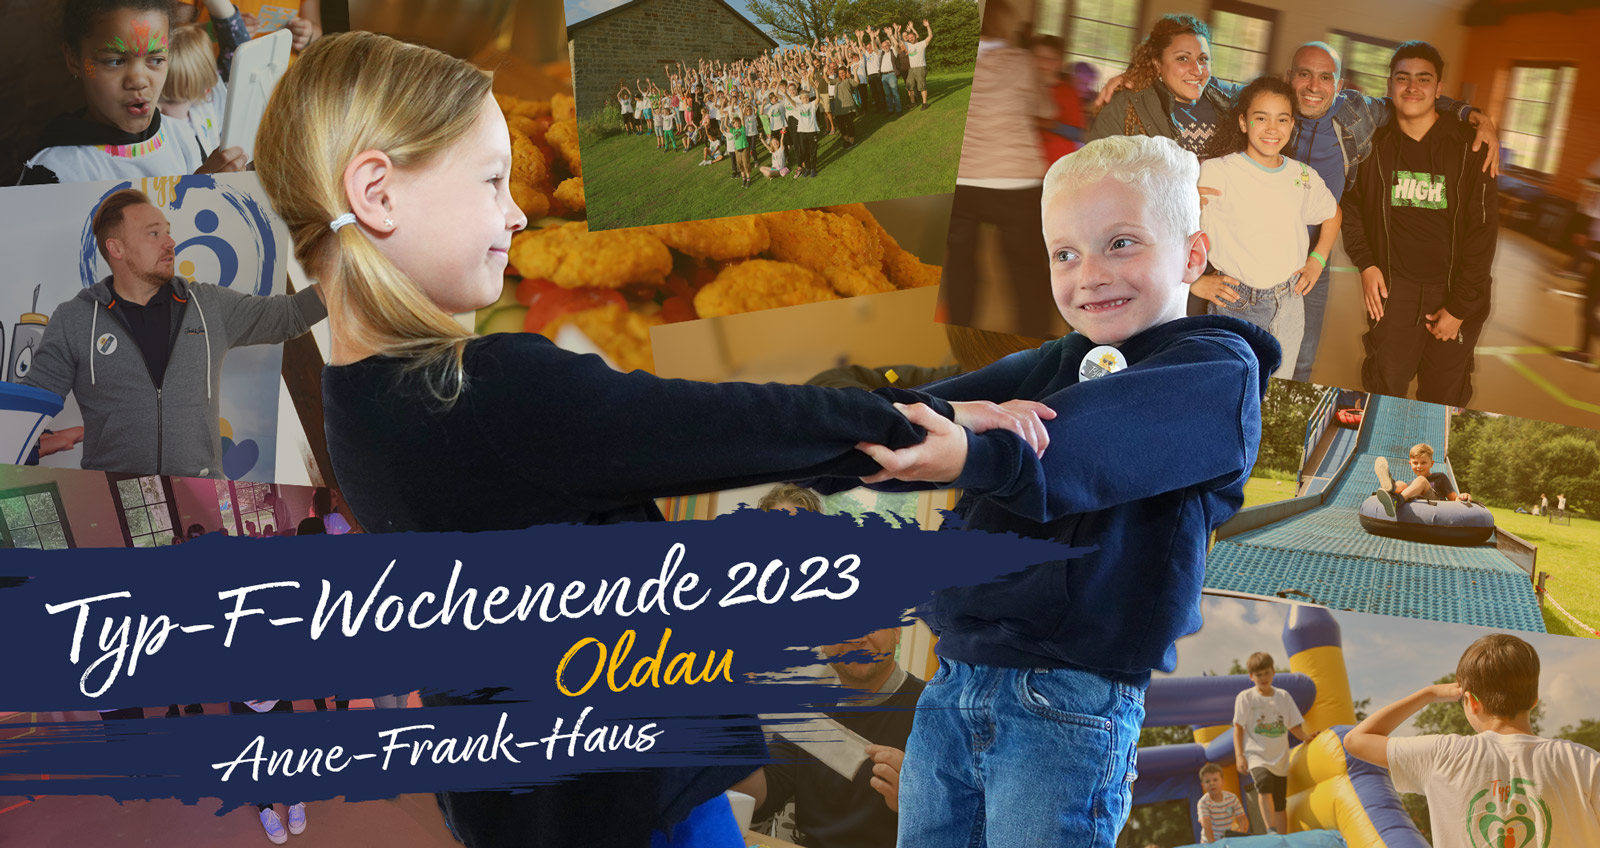 Im Hintergund Bilder von Kindern und Eltern beim Spielen, Malen, Schminken, Sport - davor zwei kleine Kinder, die sich an den Händen halten, davor der Schriftzug: "Typ-F-Wochendend 2023 Oldau Anne-Frank-Haus"